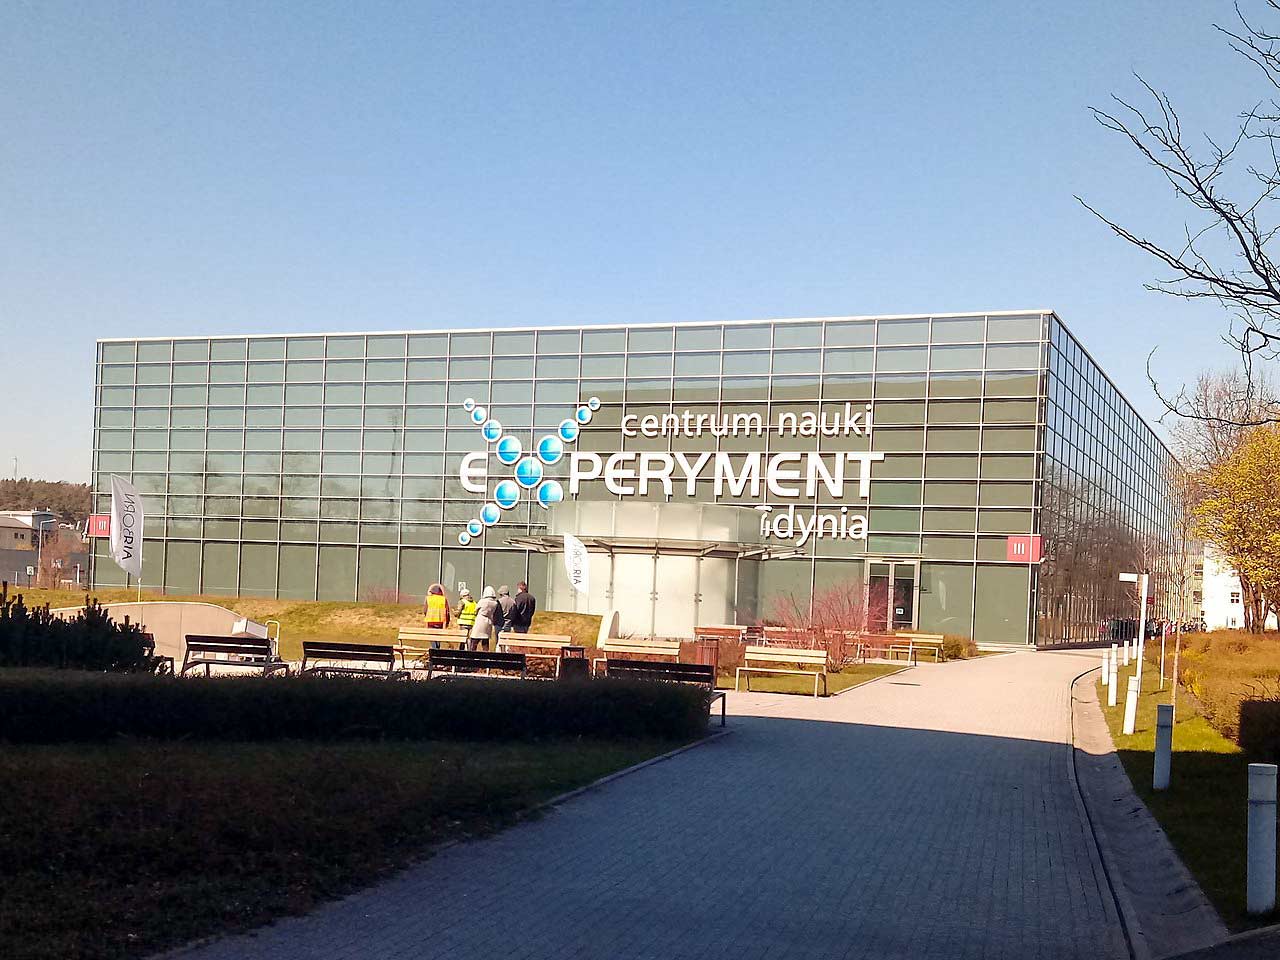 Centrum Nauki Experyment w Gdyni: W świecie nauki i odkryć